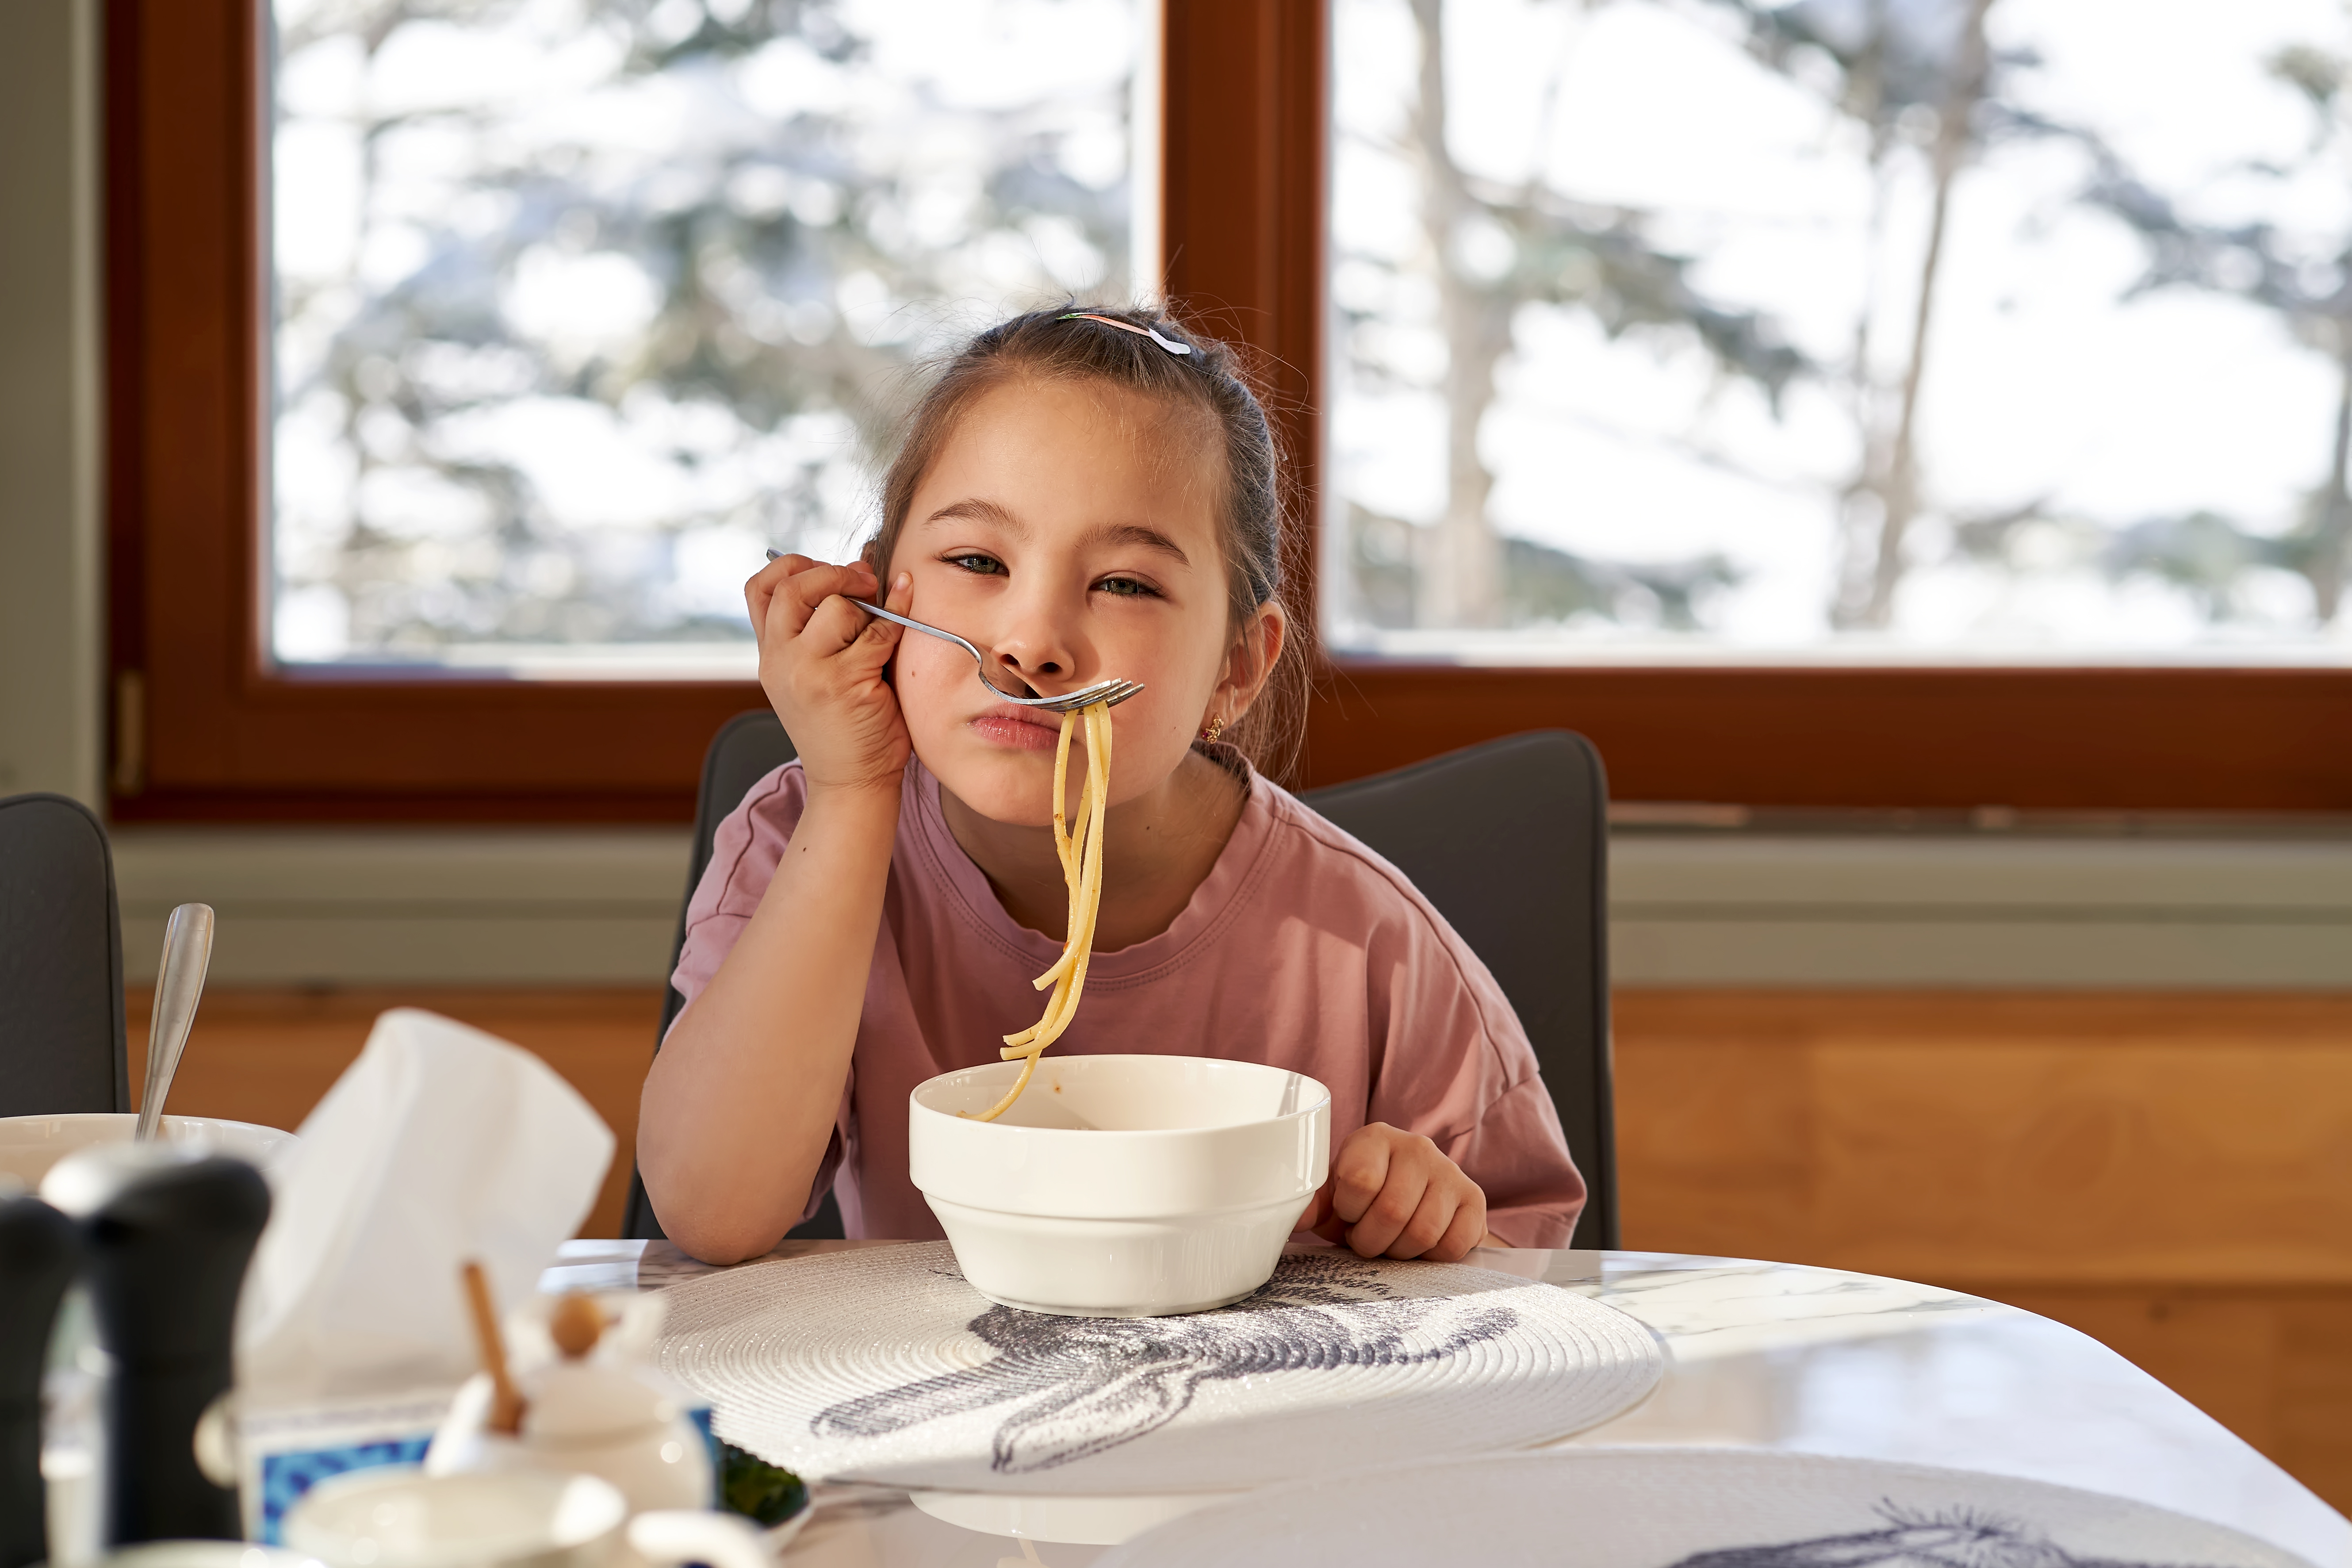 Das Mädchen probiert Spaghetti | Quelle: Getty Images